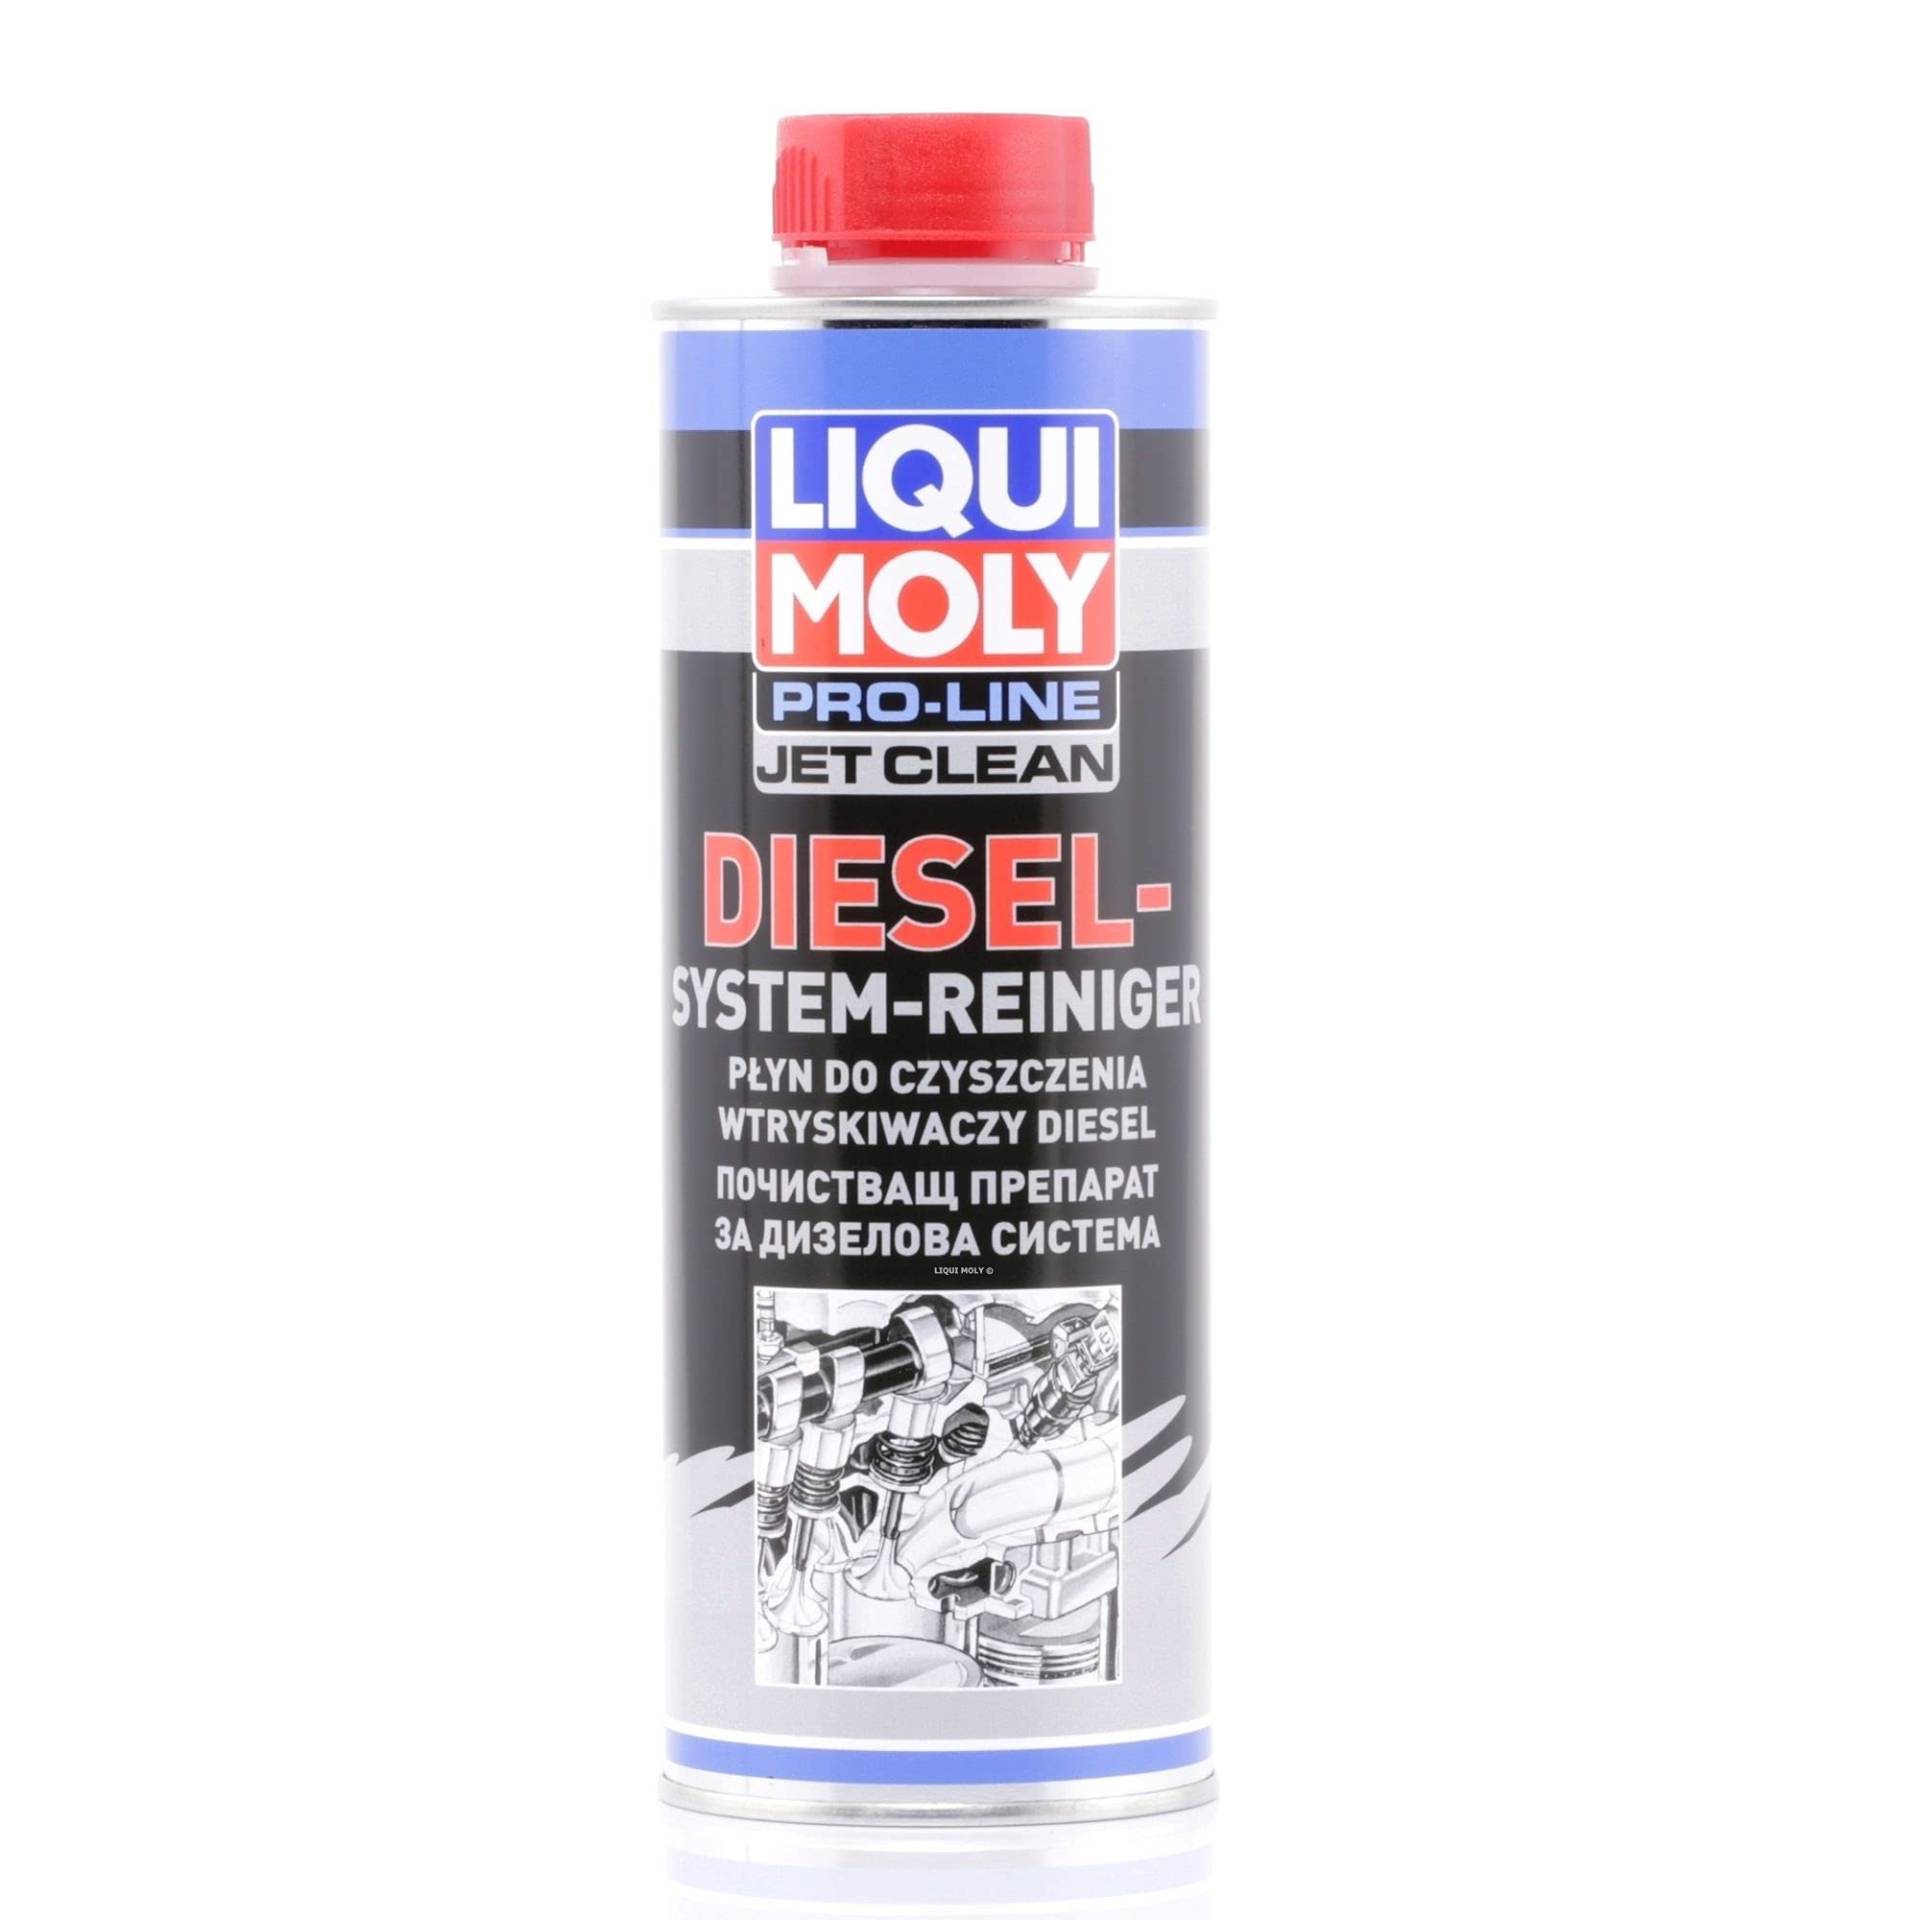 LIQUI MOLY Pro-Line JetClean Diesel-System-Reiniger | 500 ml | Dieseladditiv | Art.-Nr.: 20452 von Liqui Moly